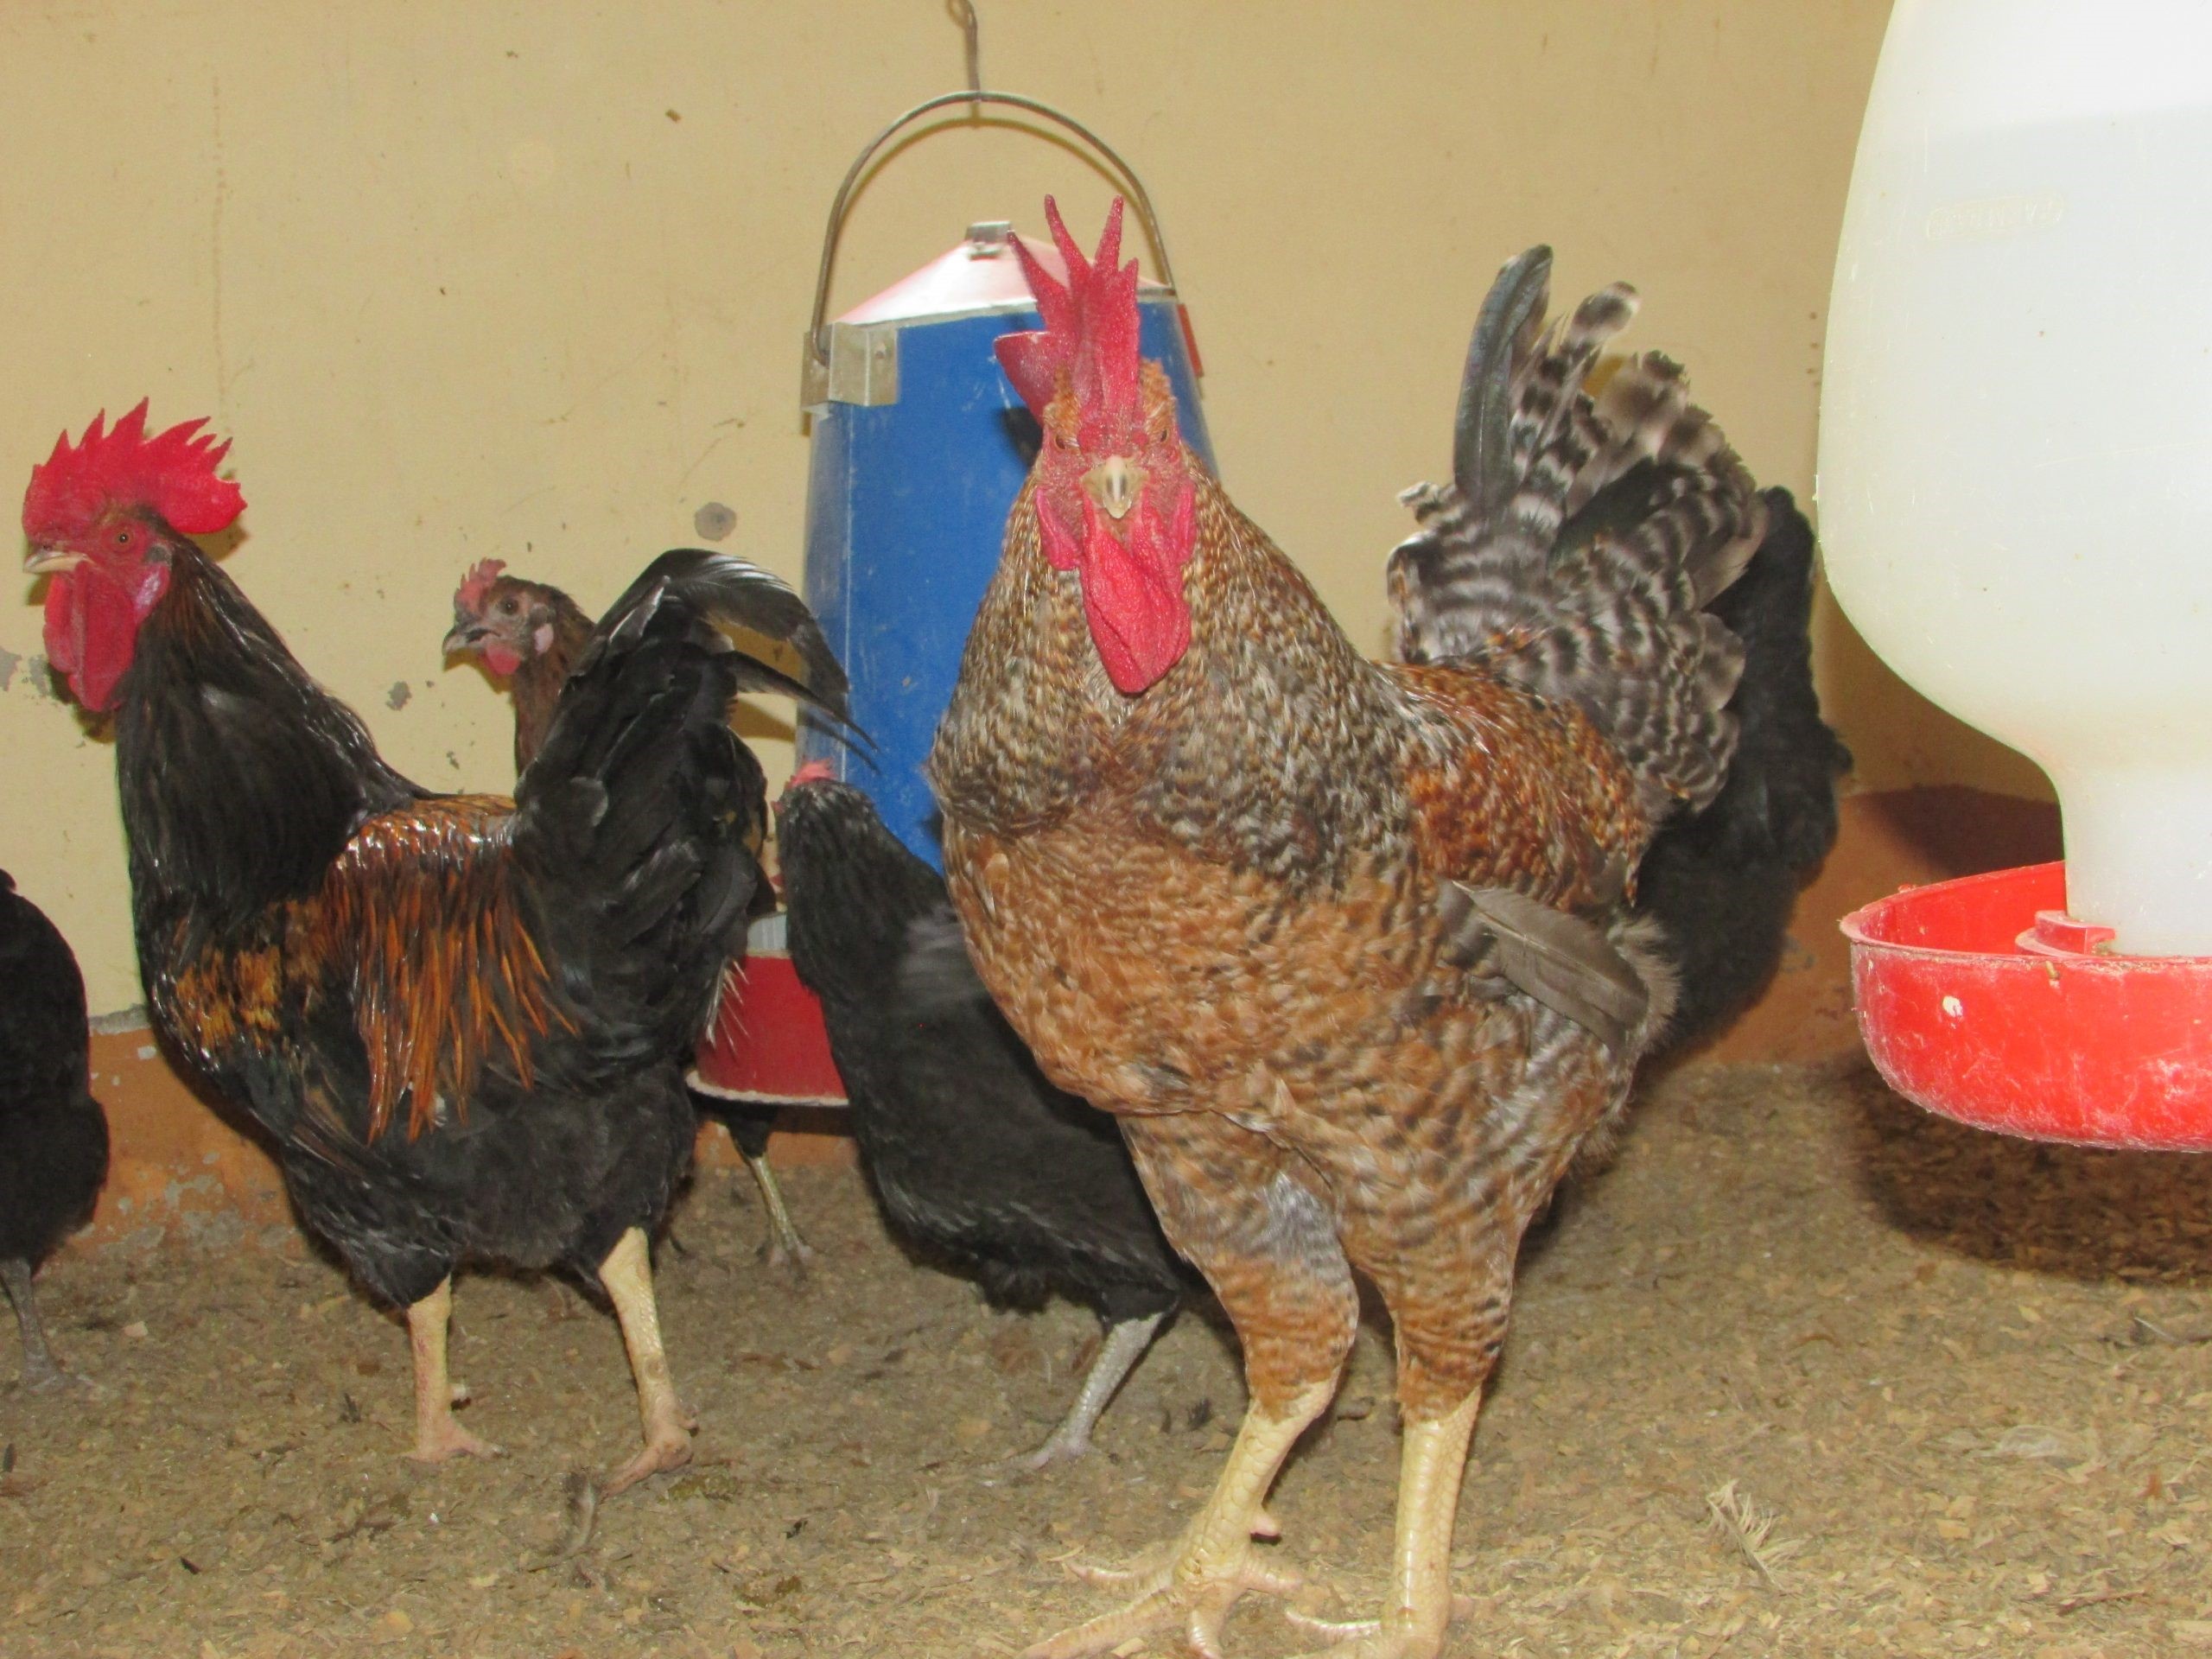 Kroiler chickens in Uganda (photo credit: ILRI/Dreck Ayebare